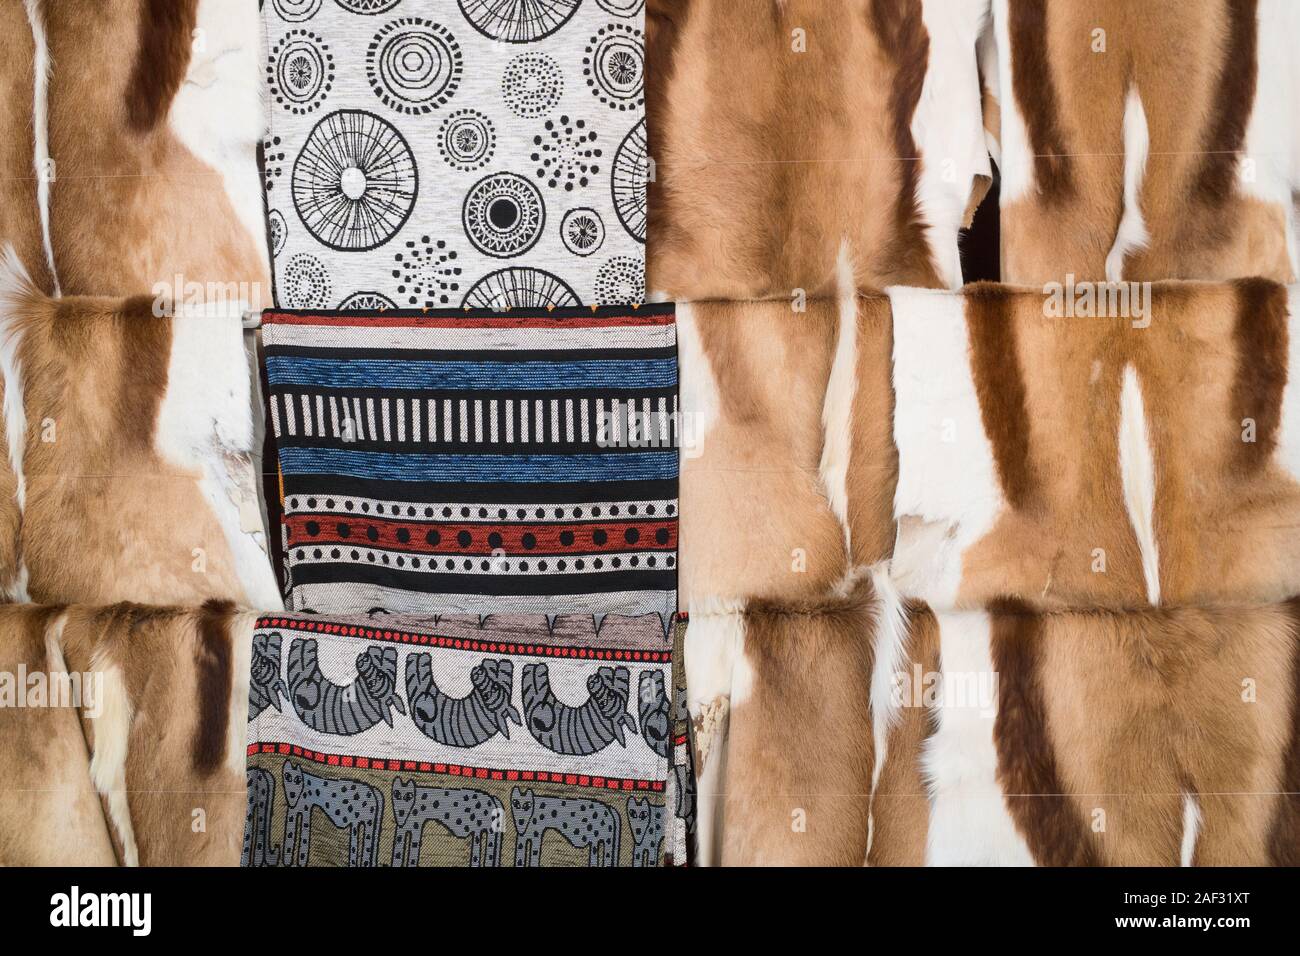 Springbock Antilope tierischer Haut oder zusammen mit afrikanischen Muster Gewebe auflegen auf Anzeige zum Verkauf an ein Tourist shop in Südafrika ausblenden Stockfoto